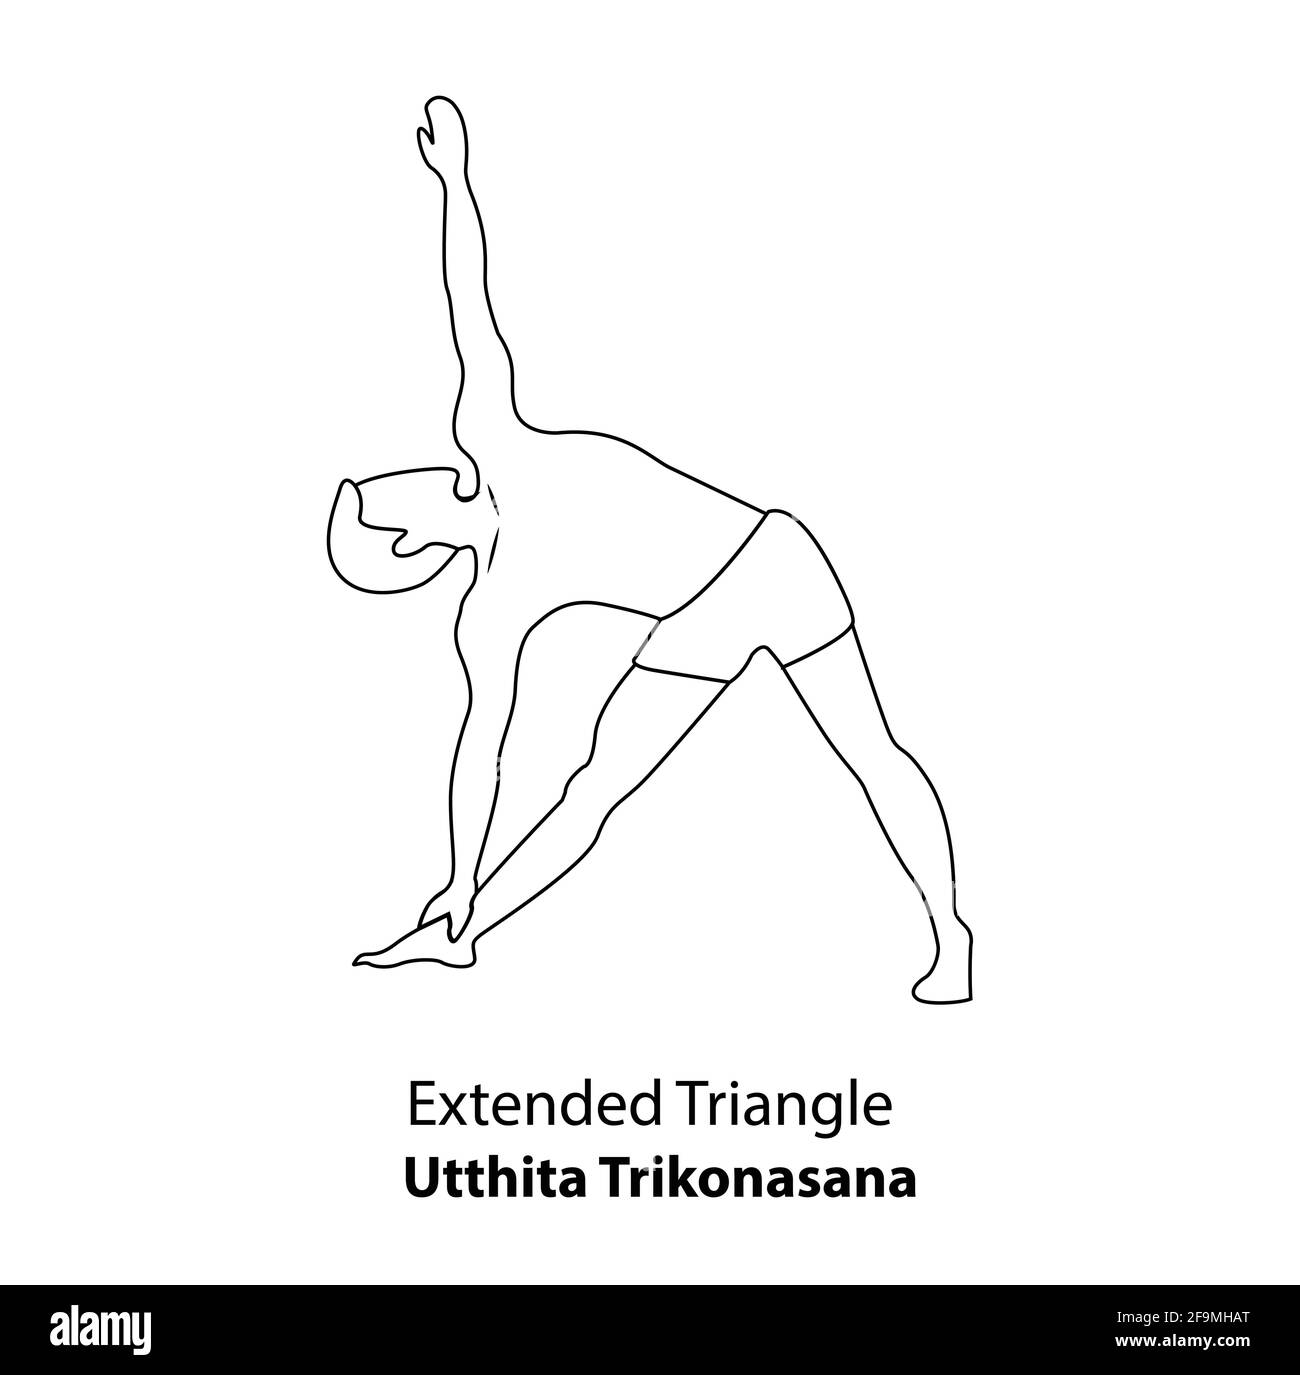 Homme pratiquant le yoga pose isolé contour Illustration. Homme debout dans le Triangle étendu ou Utthita Trikonasan, icône de la ligne de Yoga Asana Illustration de Vecteur